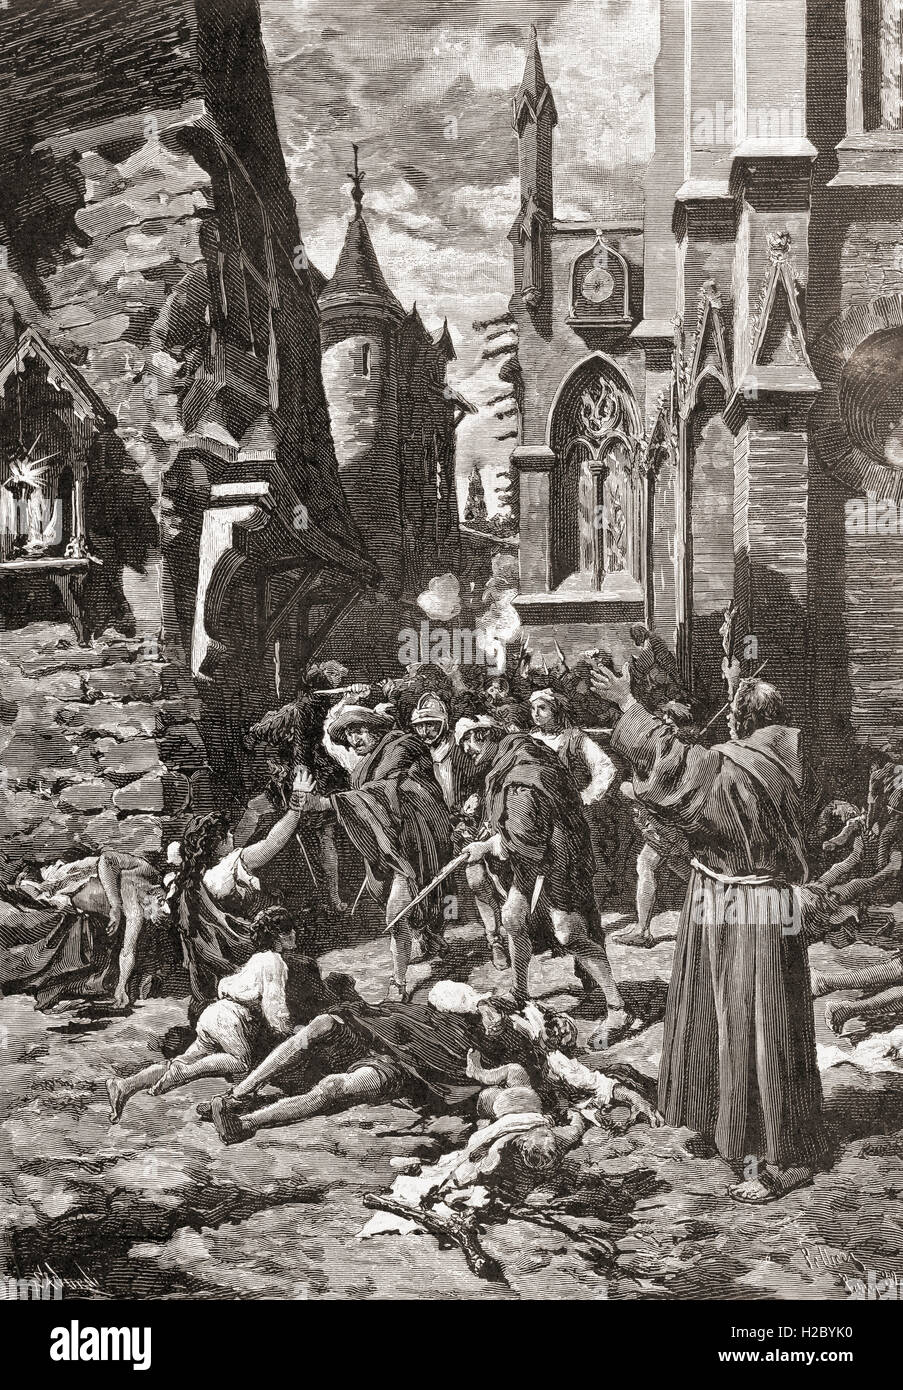 Le massacre de la Saint-Barthélemy à Paris, France, en 1572, un groupe cible d'assassinats et d'une vague de la violence populaire catholique, dirigé contre les Huguenots (protestants calvinistes français) pendant les Guerres de Religion. Banque D'Images